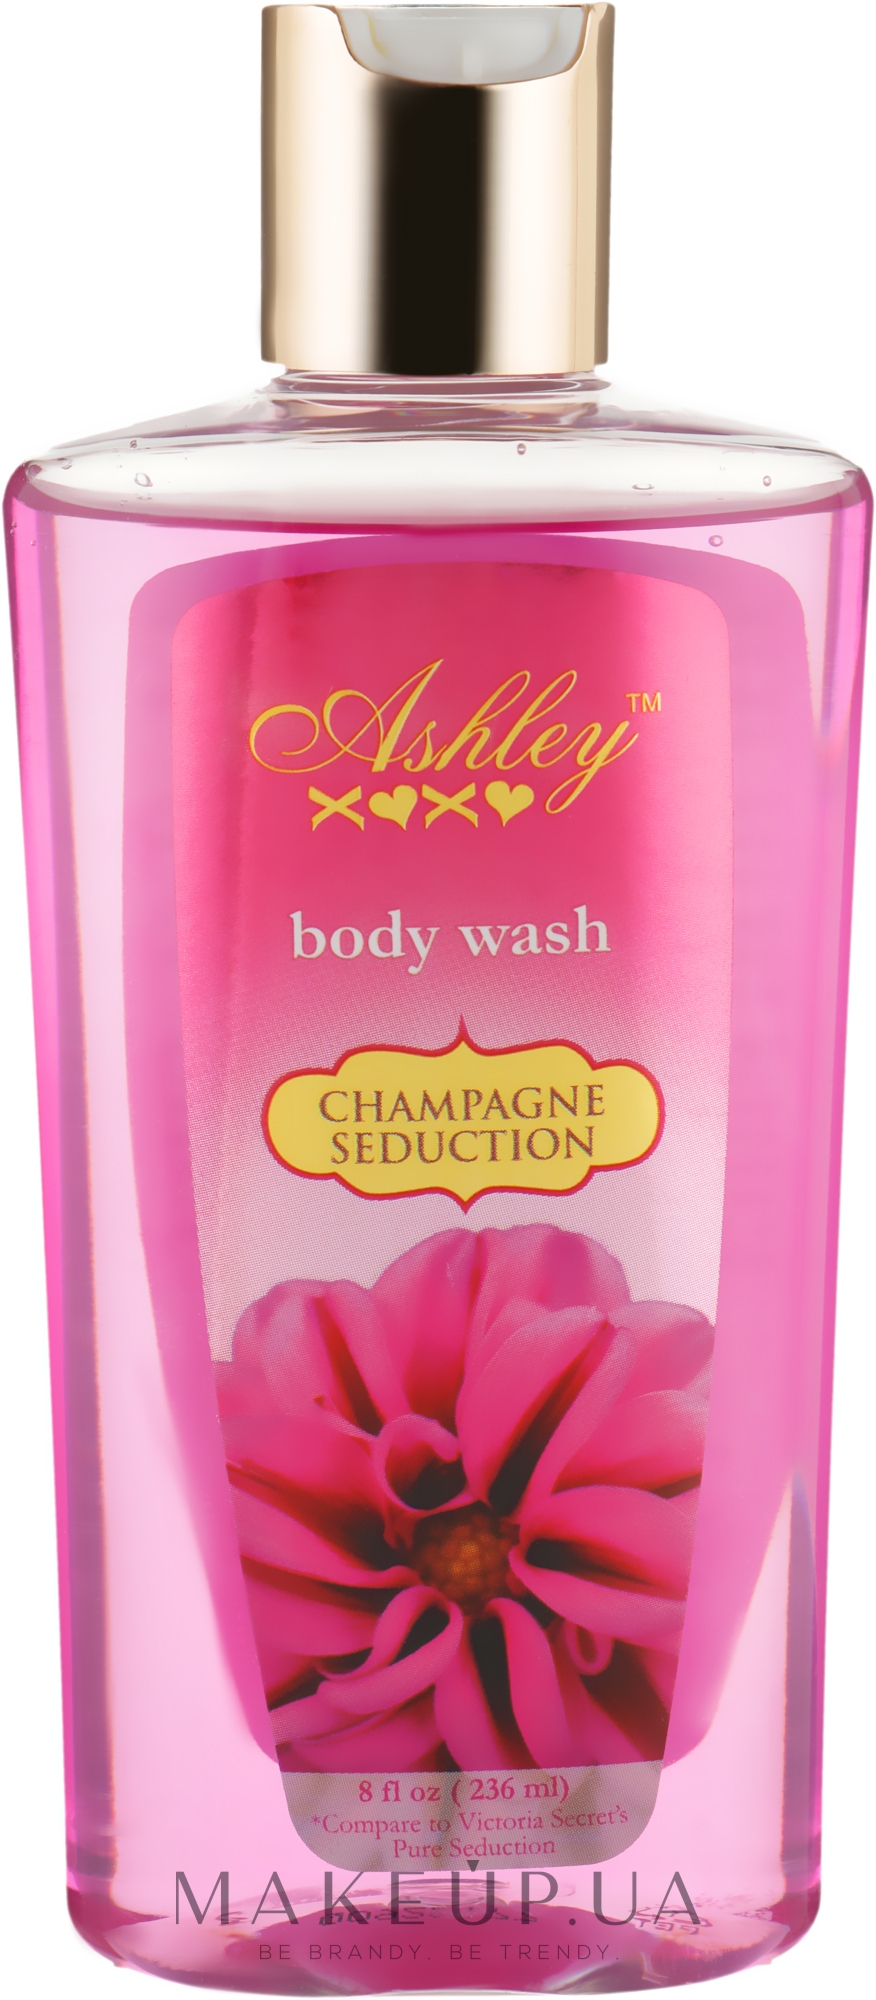 Увлажняющий гель для душа - Ashley Champagne Seduction Ultra Hydrating Body Wash — фото 236ml